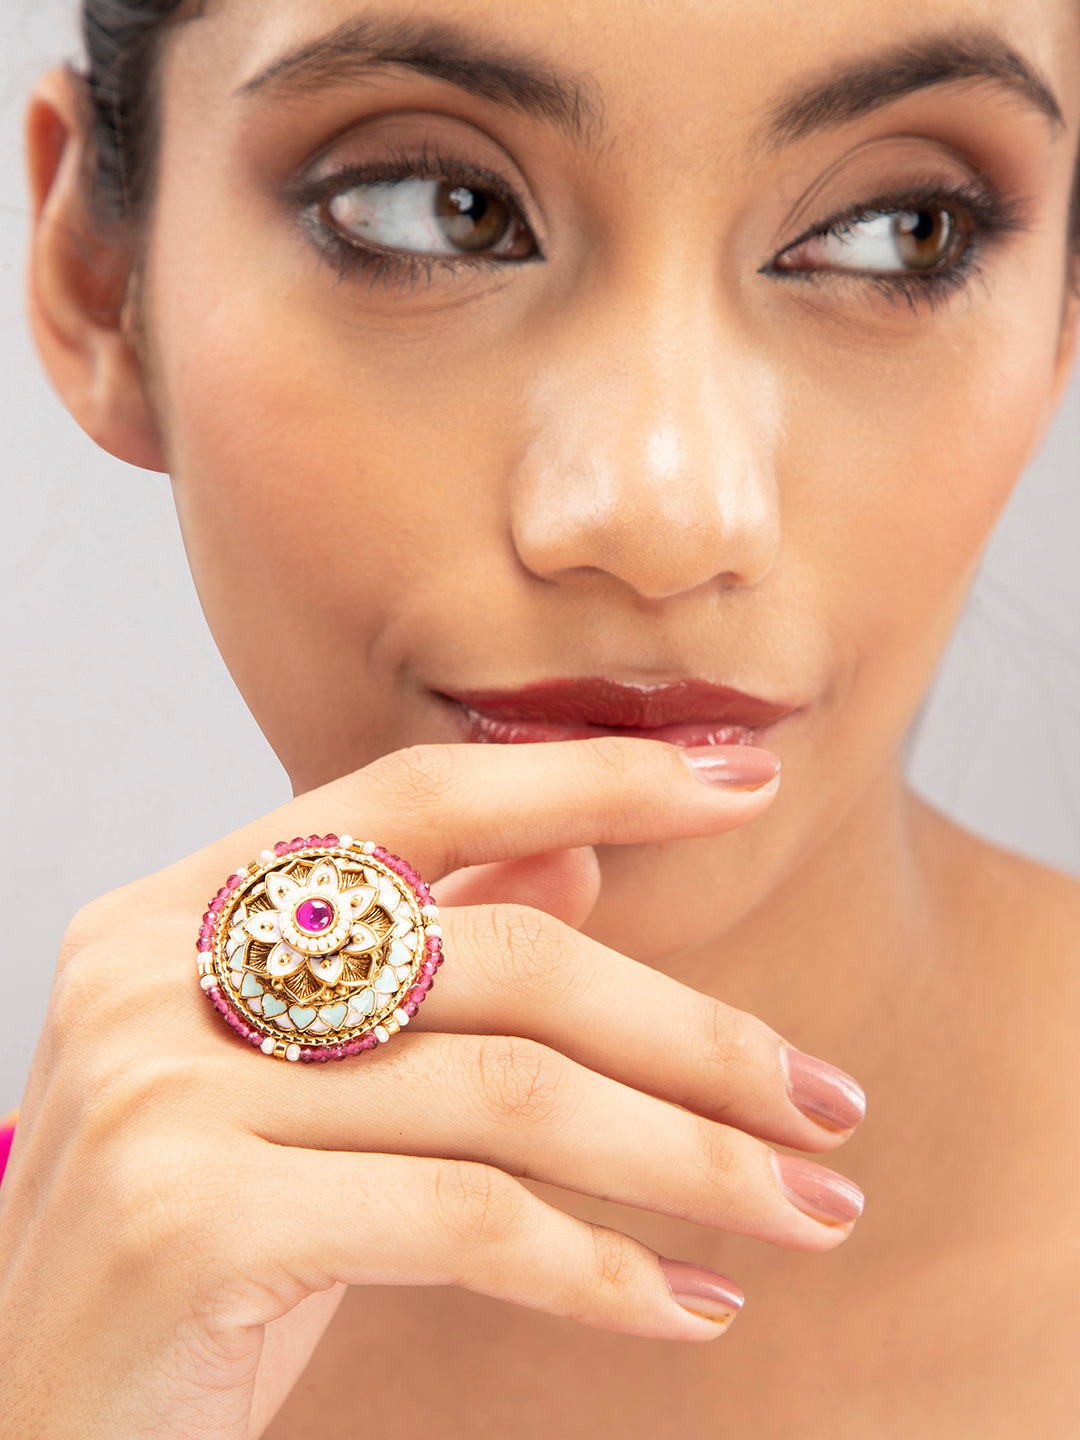 Priyaasi Gold Plated Stone Studded Floral Meenakari Ring